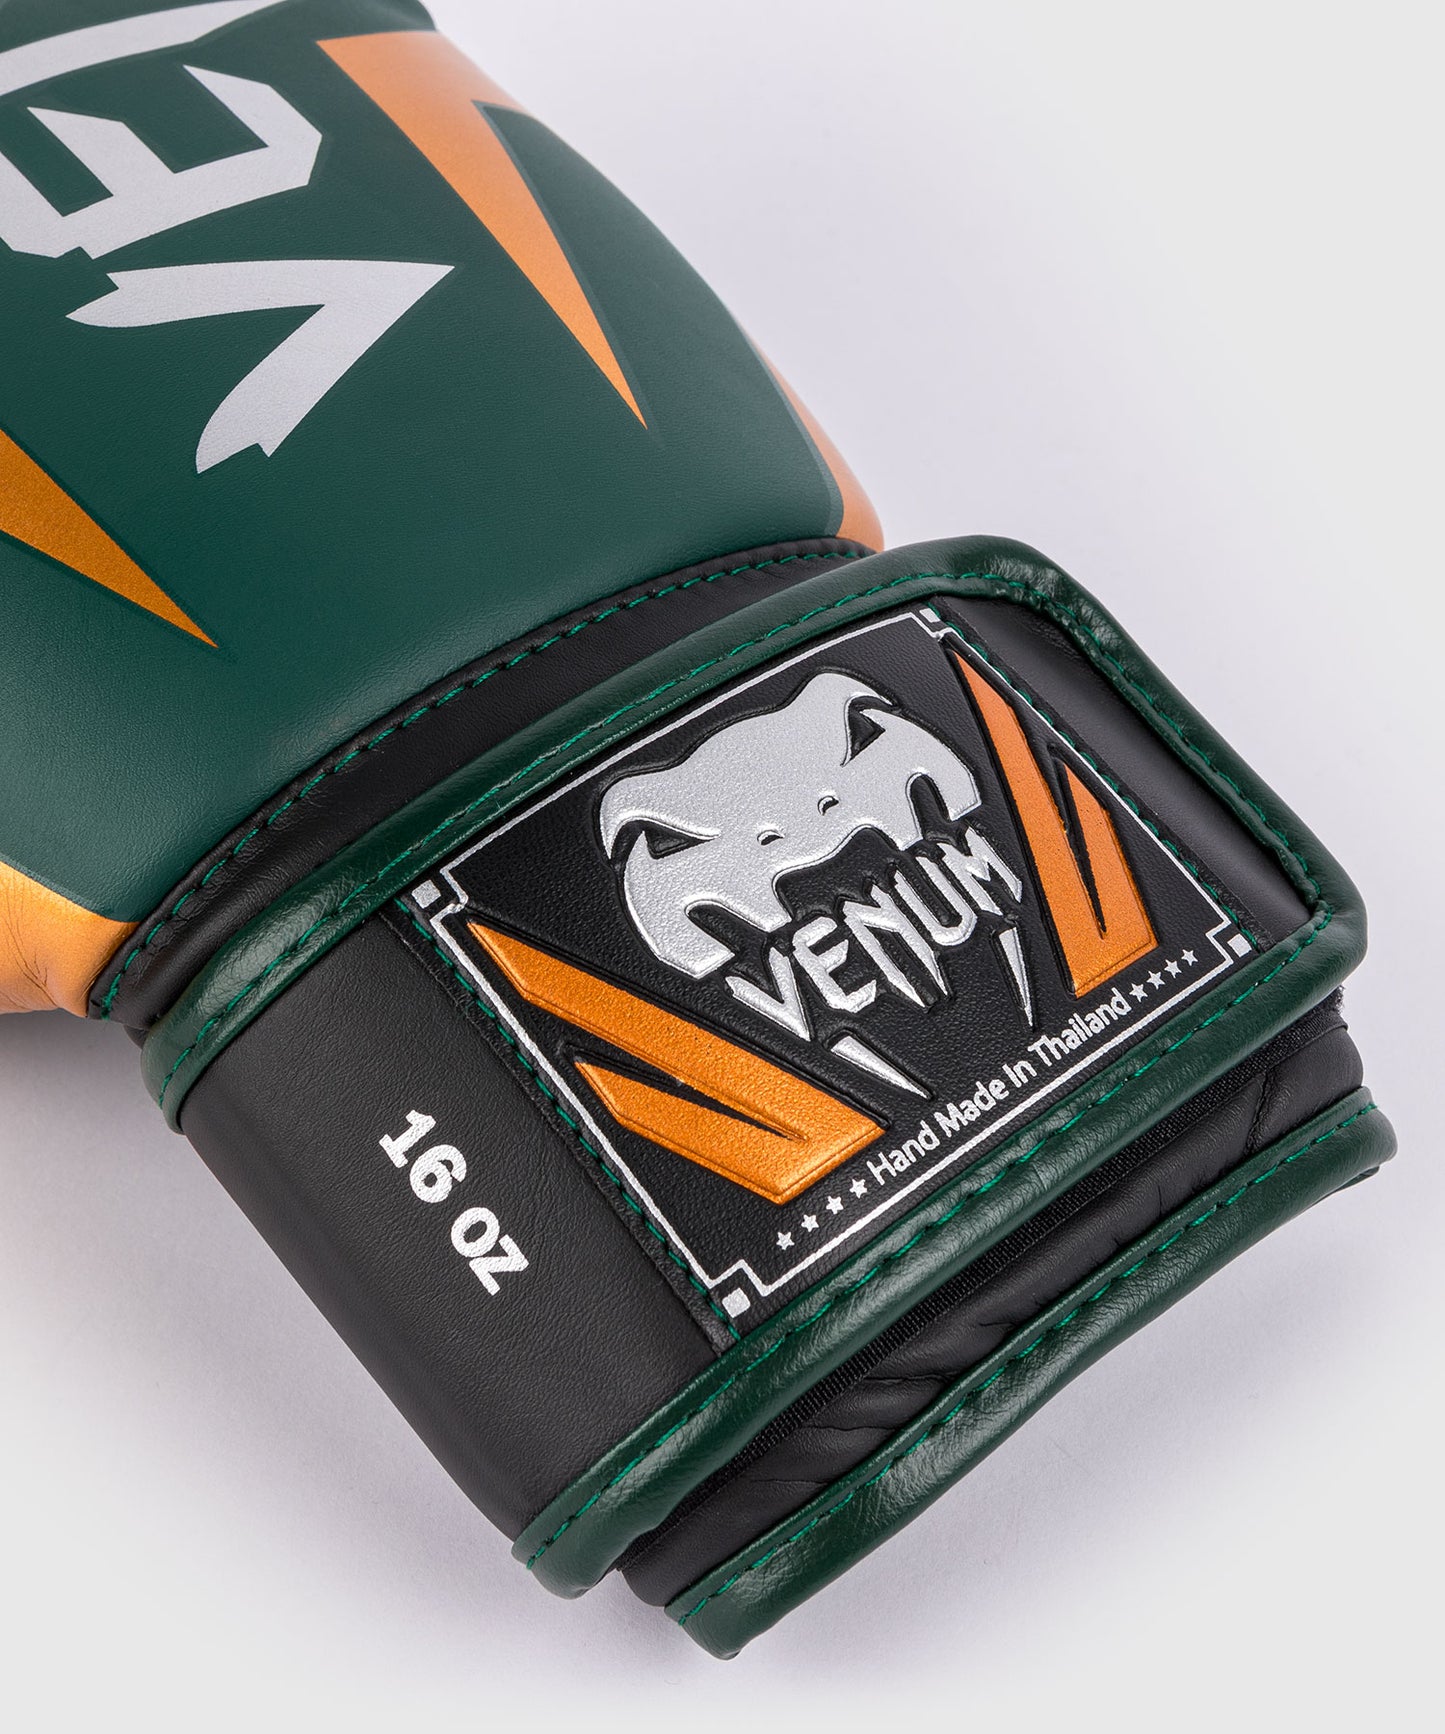 Боксерские перчатки Venum Elite - зеленый/бронзовый/серебристый